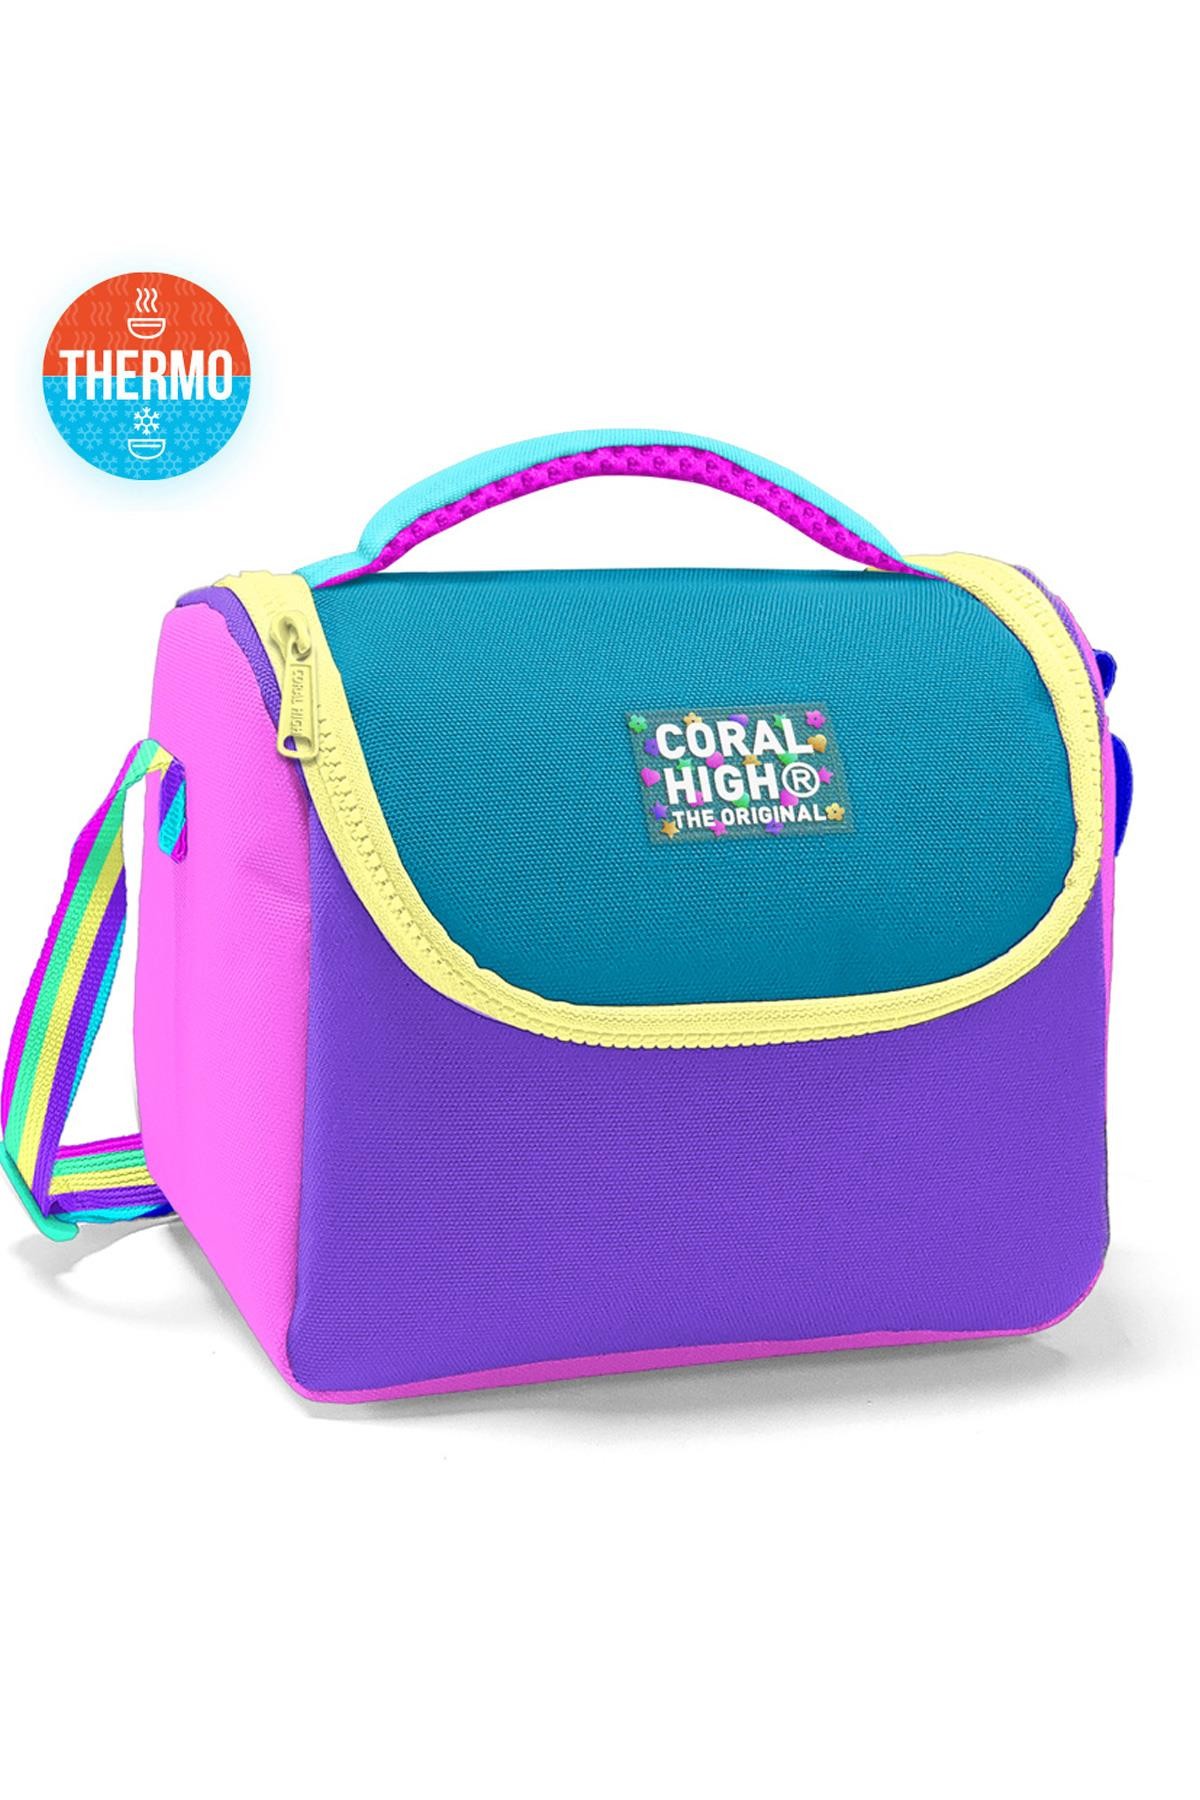 Coral High Kids  Pembe Pastel Renkli Thermo Beslenme Çantası 11759